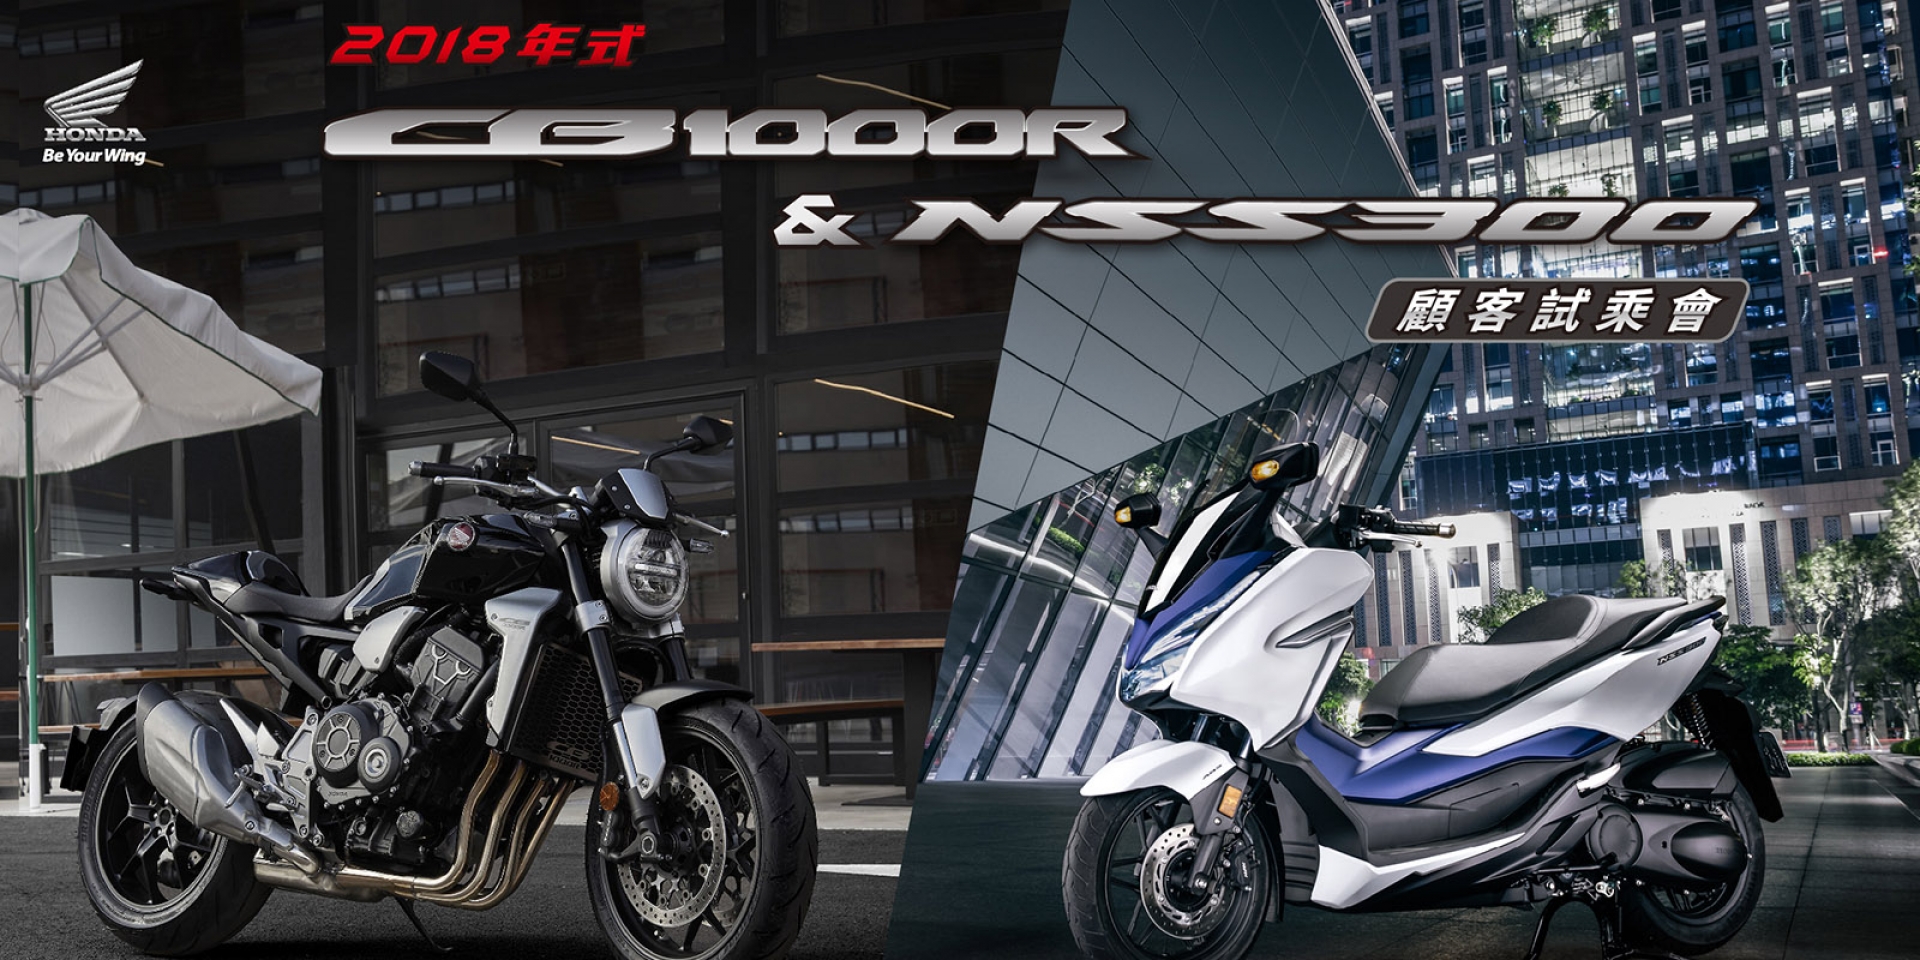 官方新聞稿。Honda Taiwan 2018 CB1000R & NSS300  顧客試乘會 活動開跑